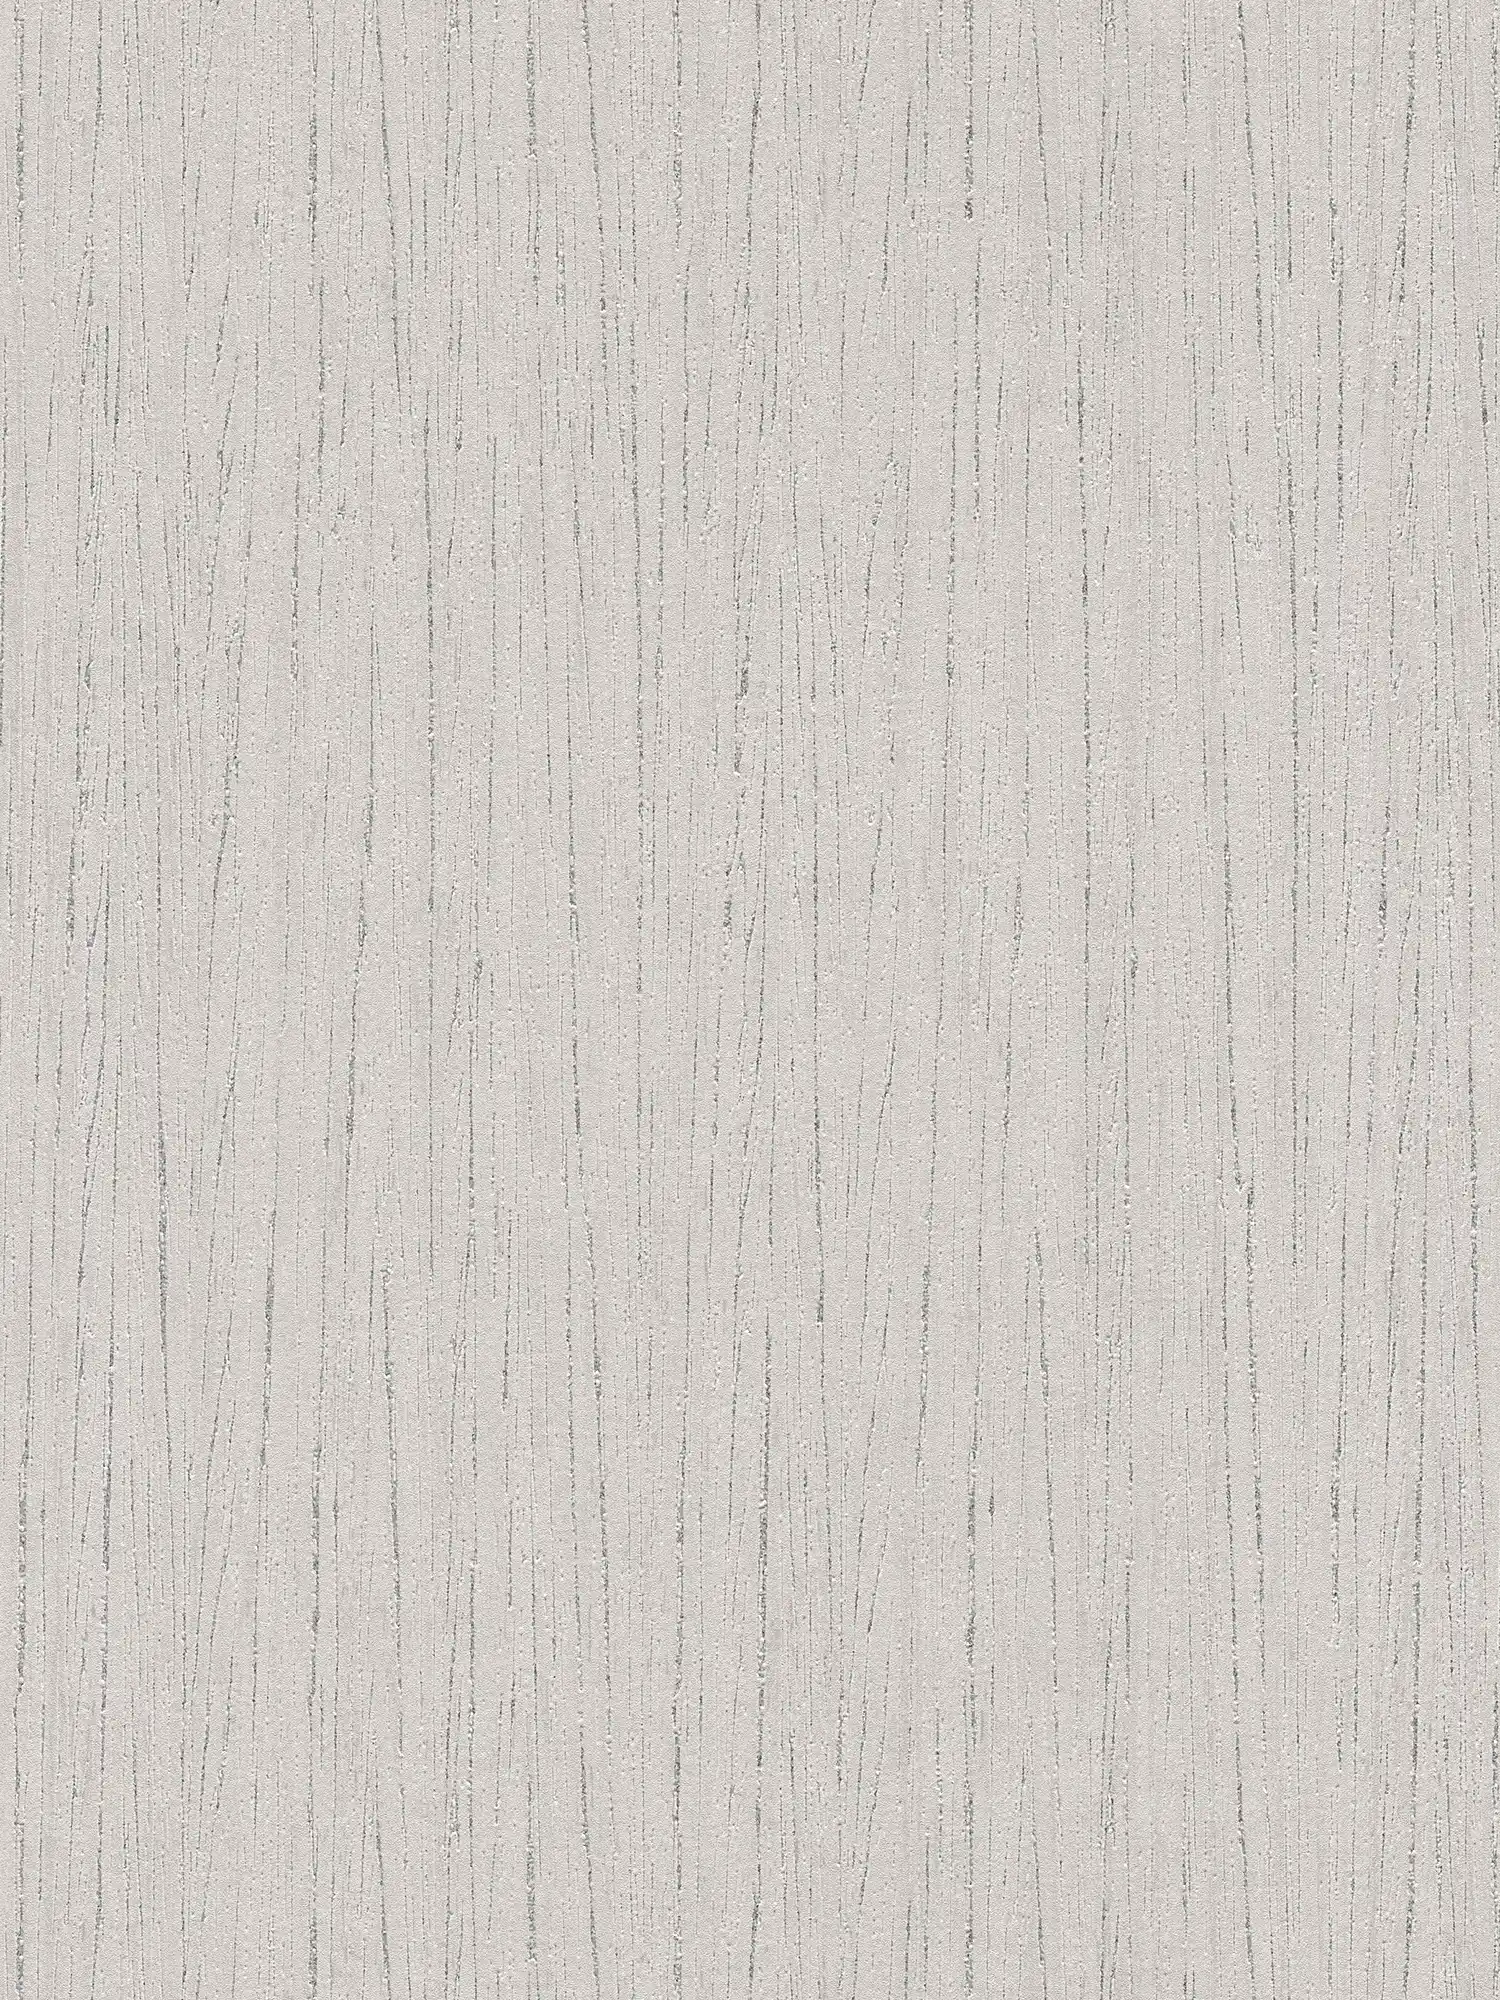 Papel pintado gris de tejido no tejido con motivos rayados en estilo natural
